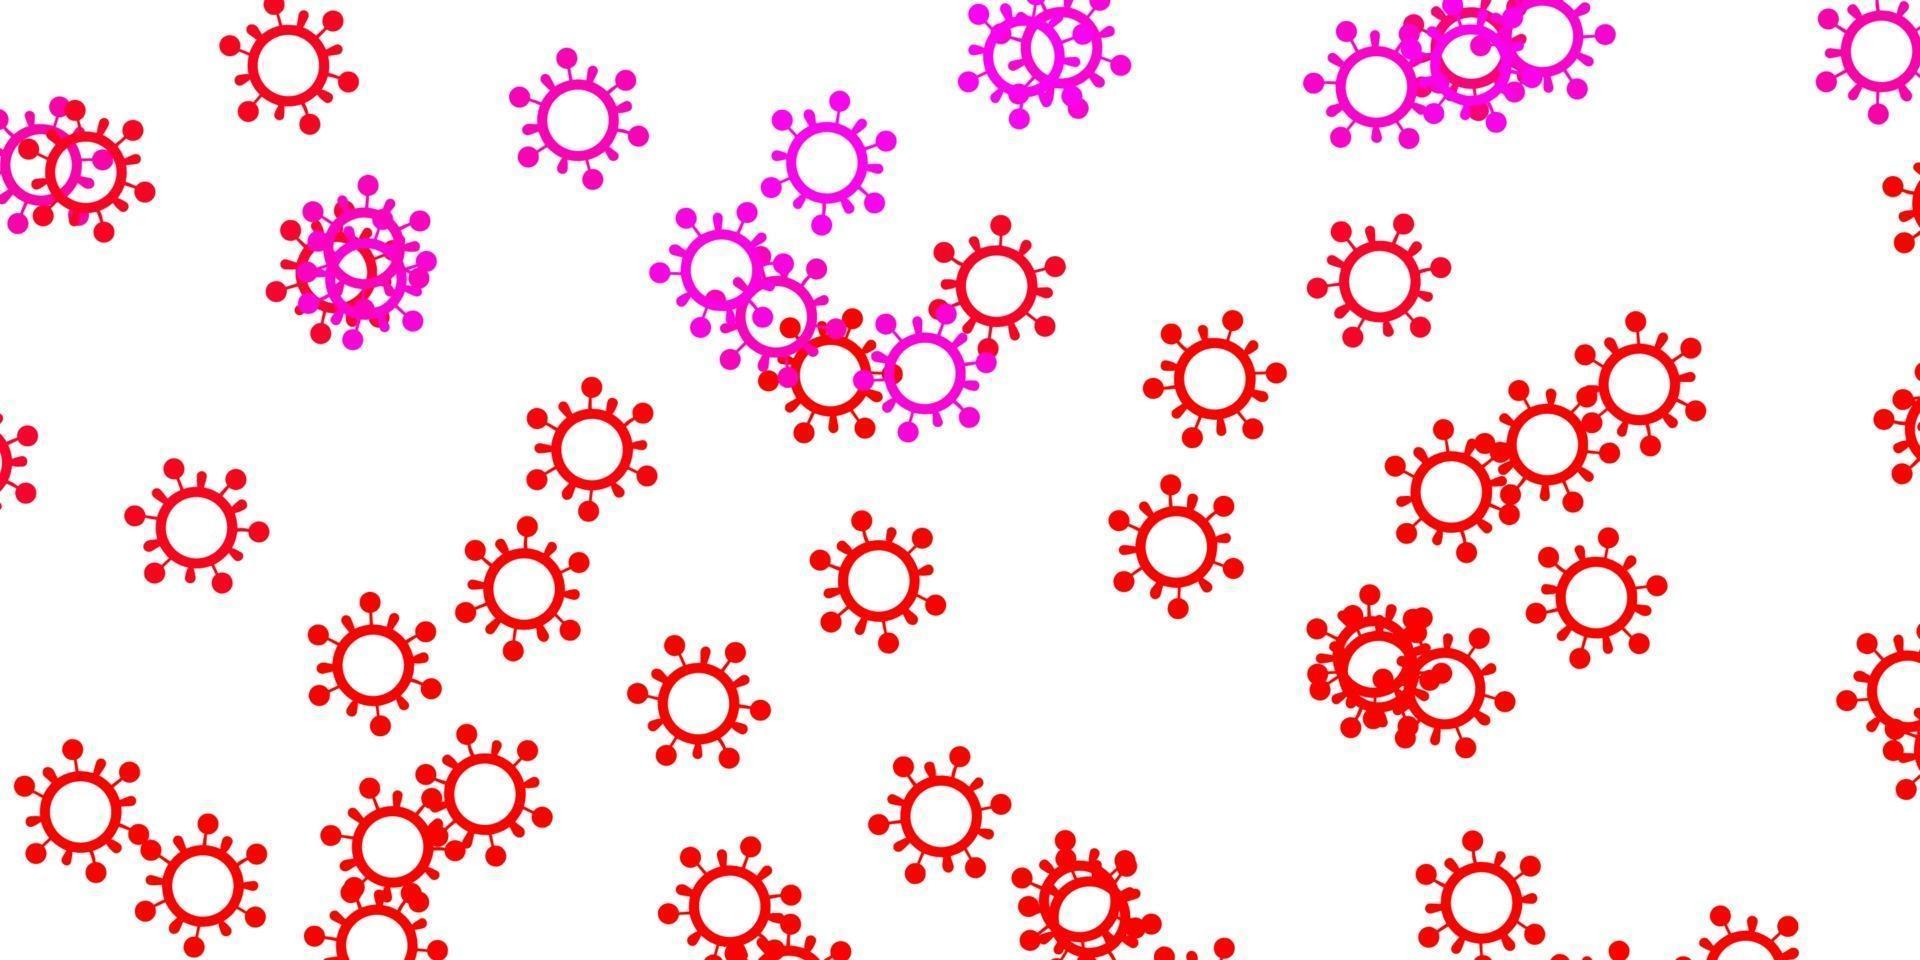 modèle de vecteur rose clair, rouge avec des signes de grippe.